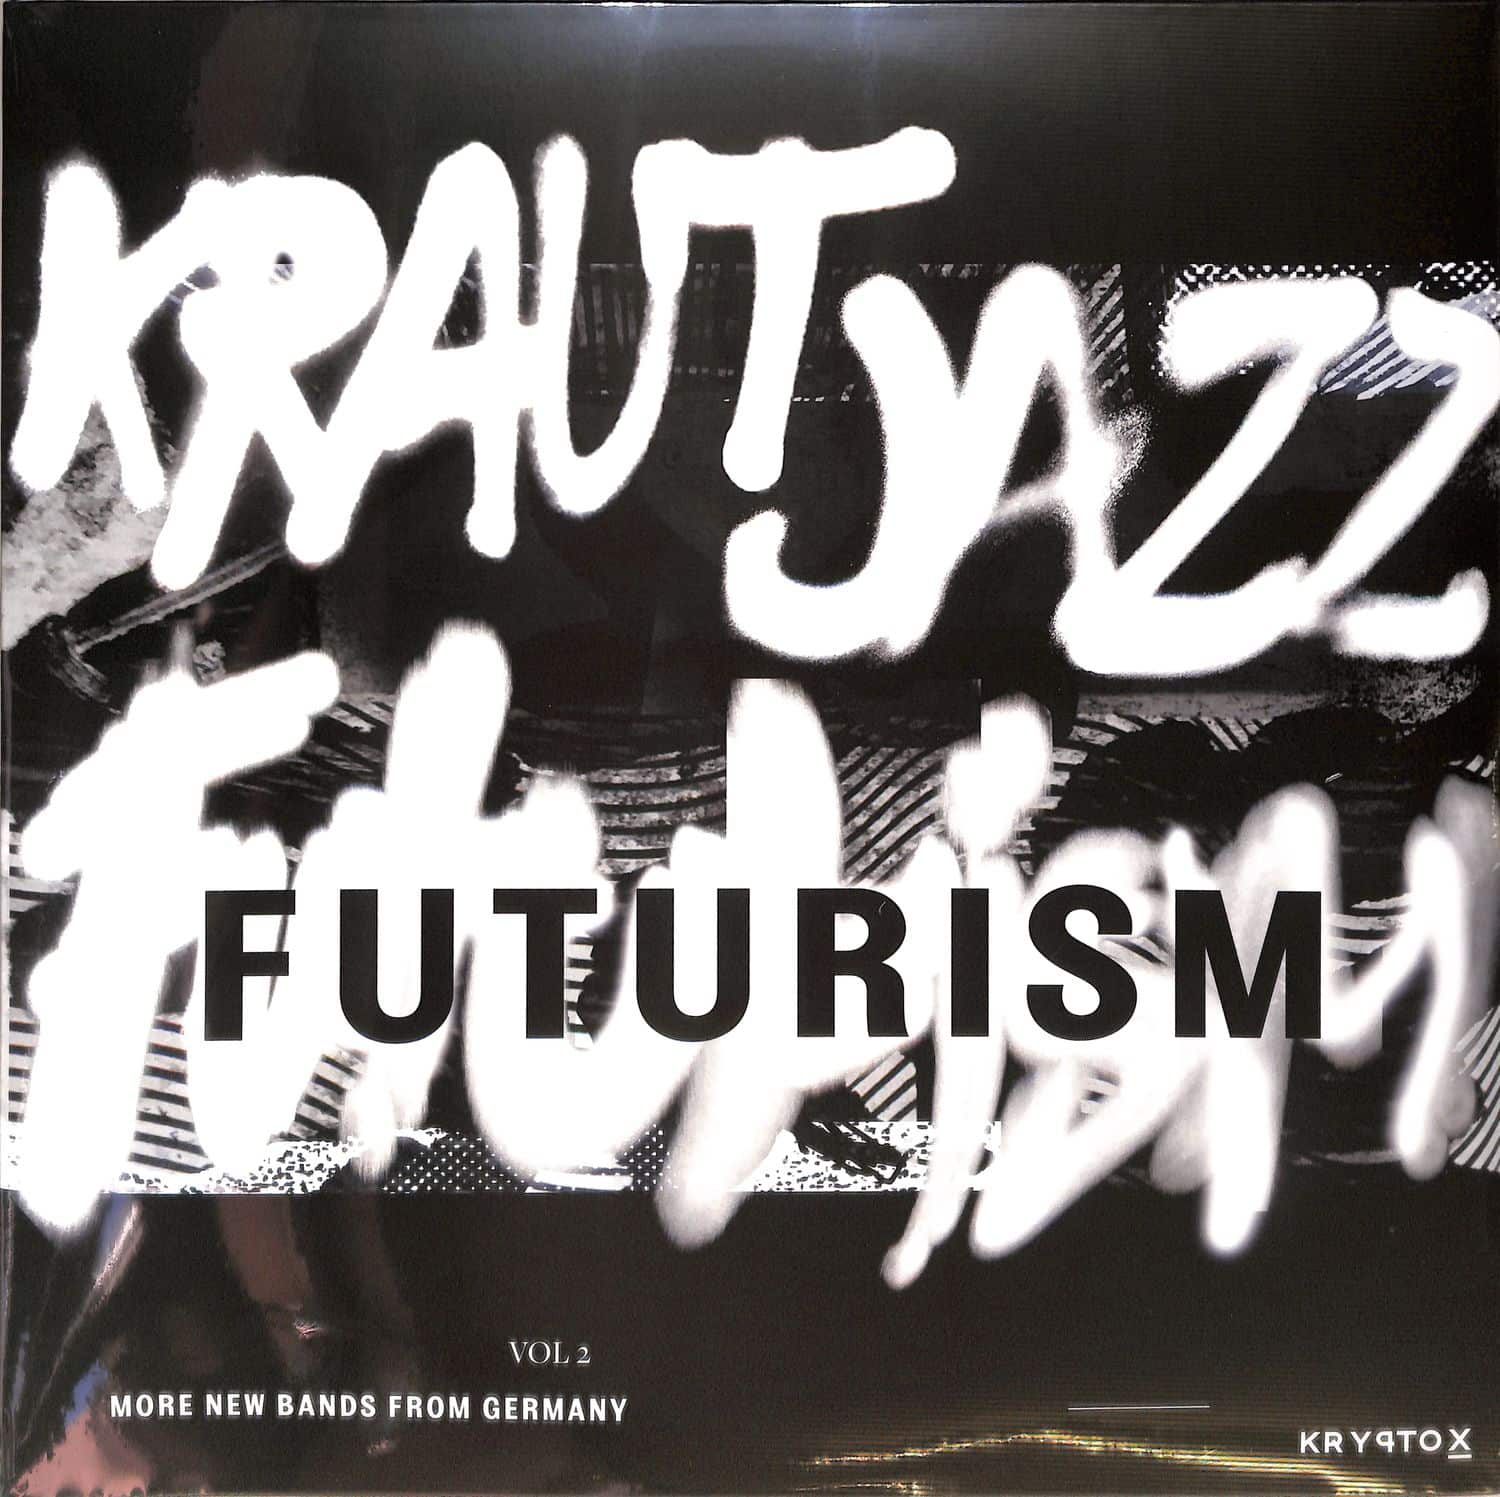 Various Artists - KRAUT JAZZ FUTURISM 2 